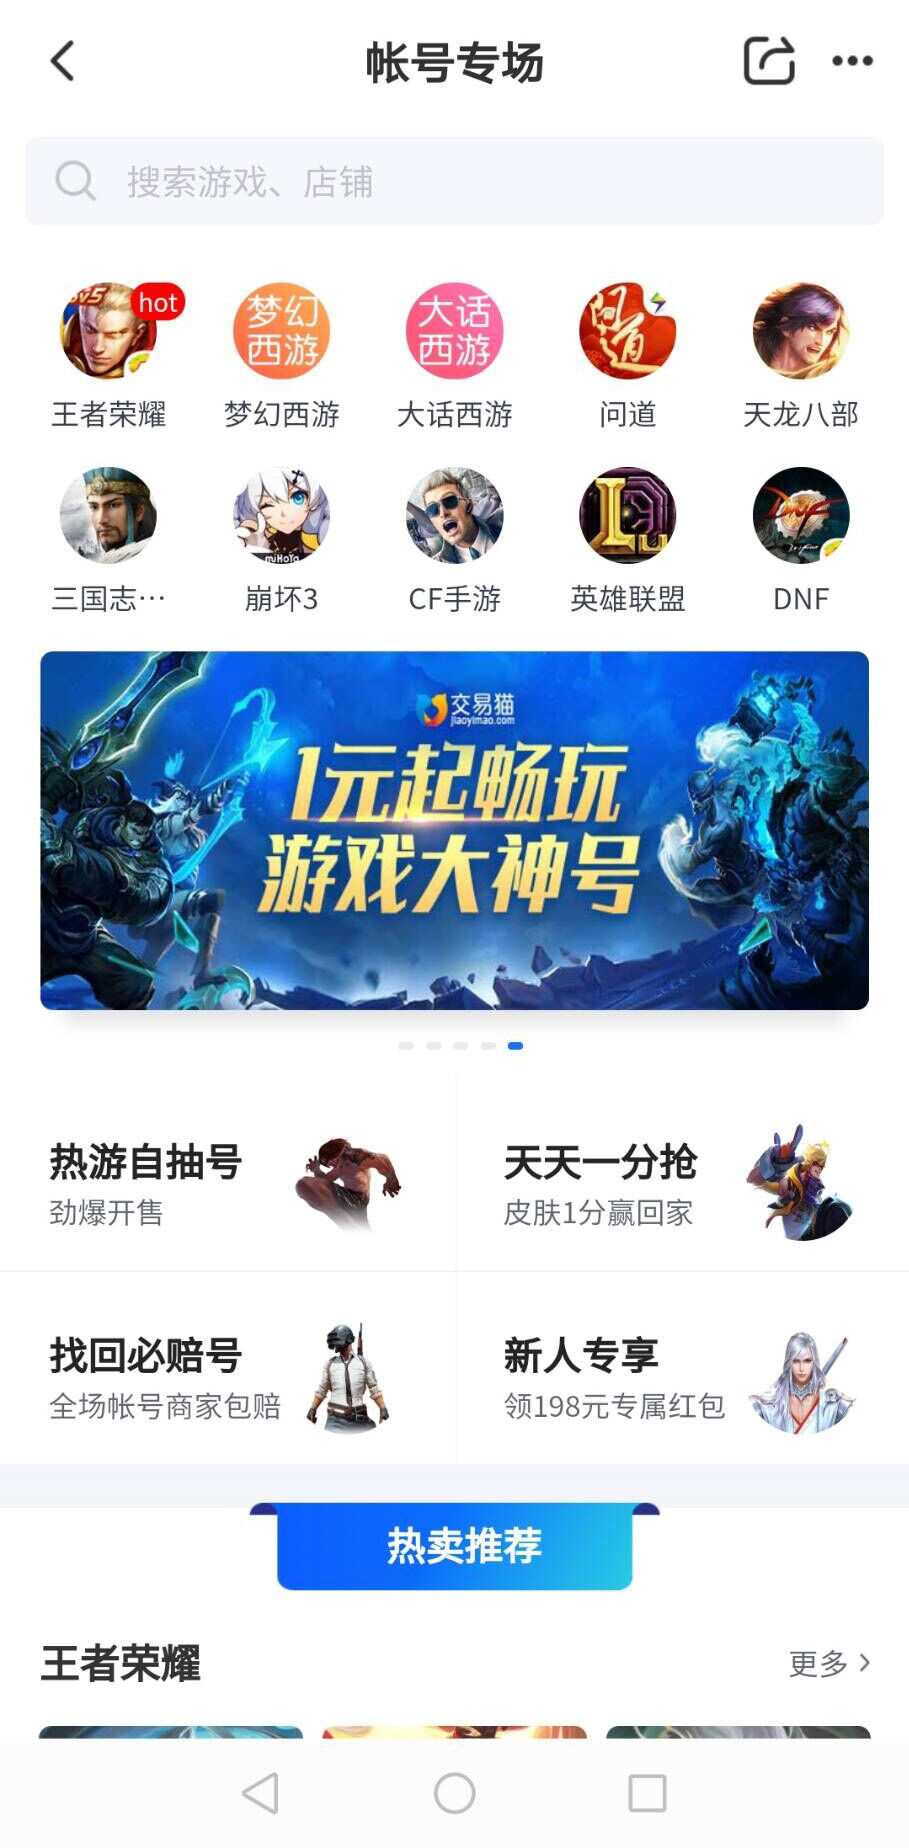 深圳买游戏的地方_深圳游戏_比深圳便宜的手机游戏平台